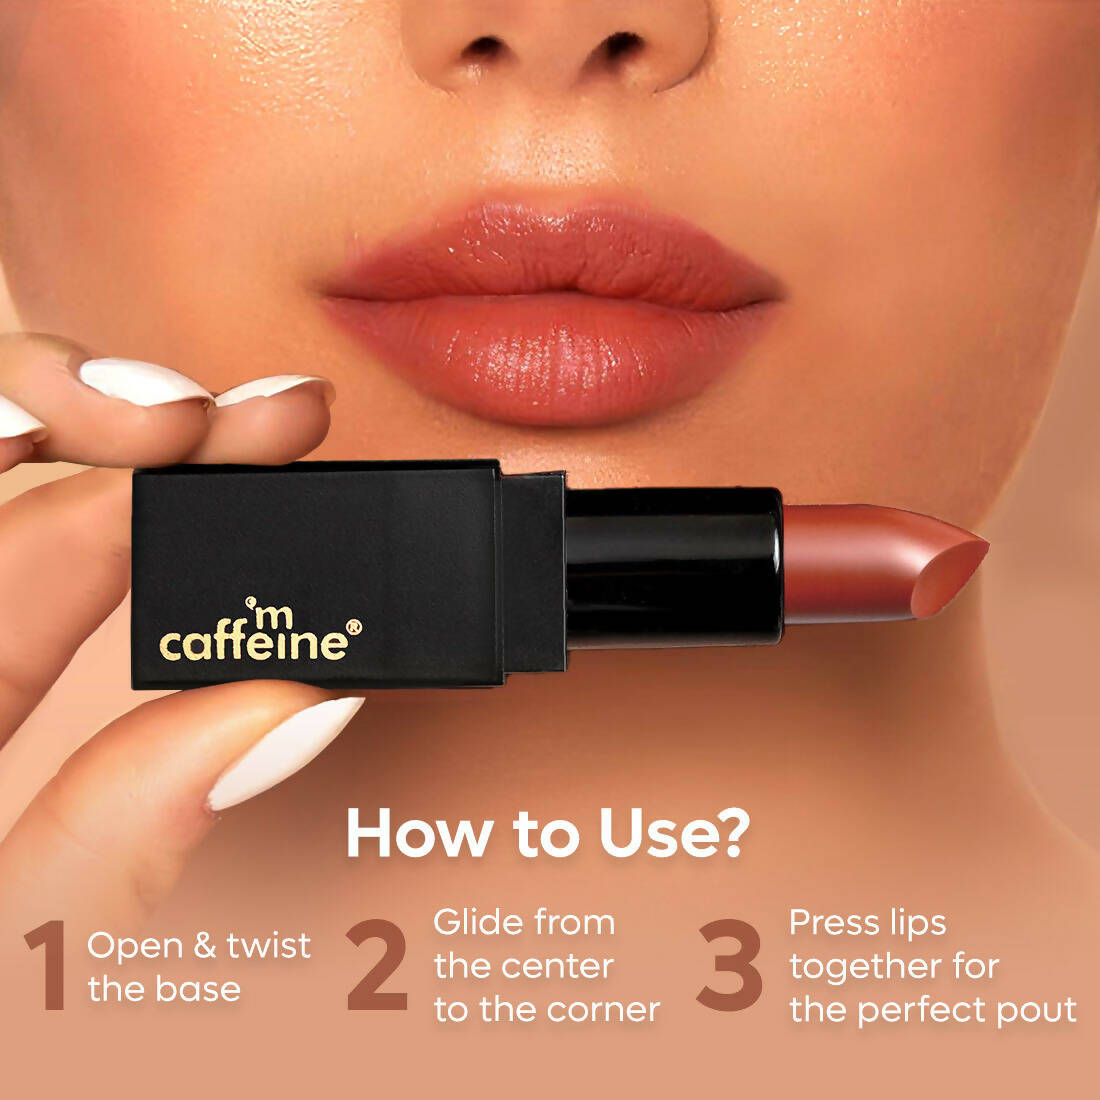 mCaffeine Cocoa Kiss Creamy Matte Lipstick - Caramel Marvel - Distacart